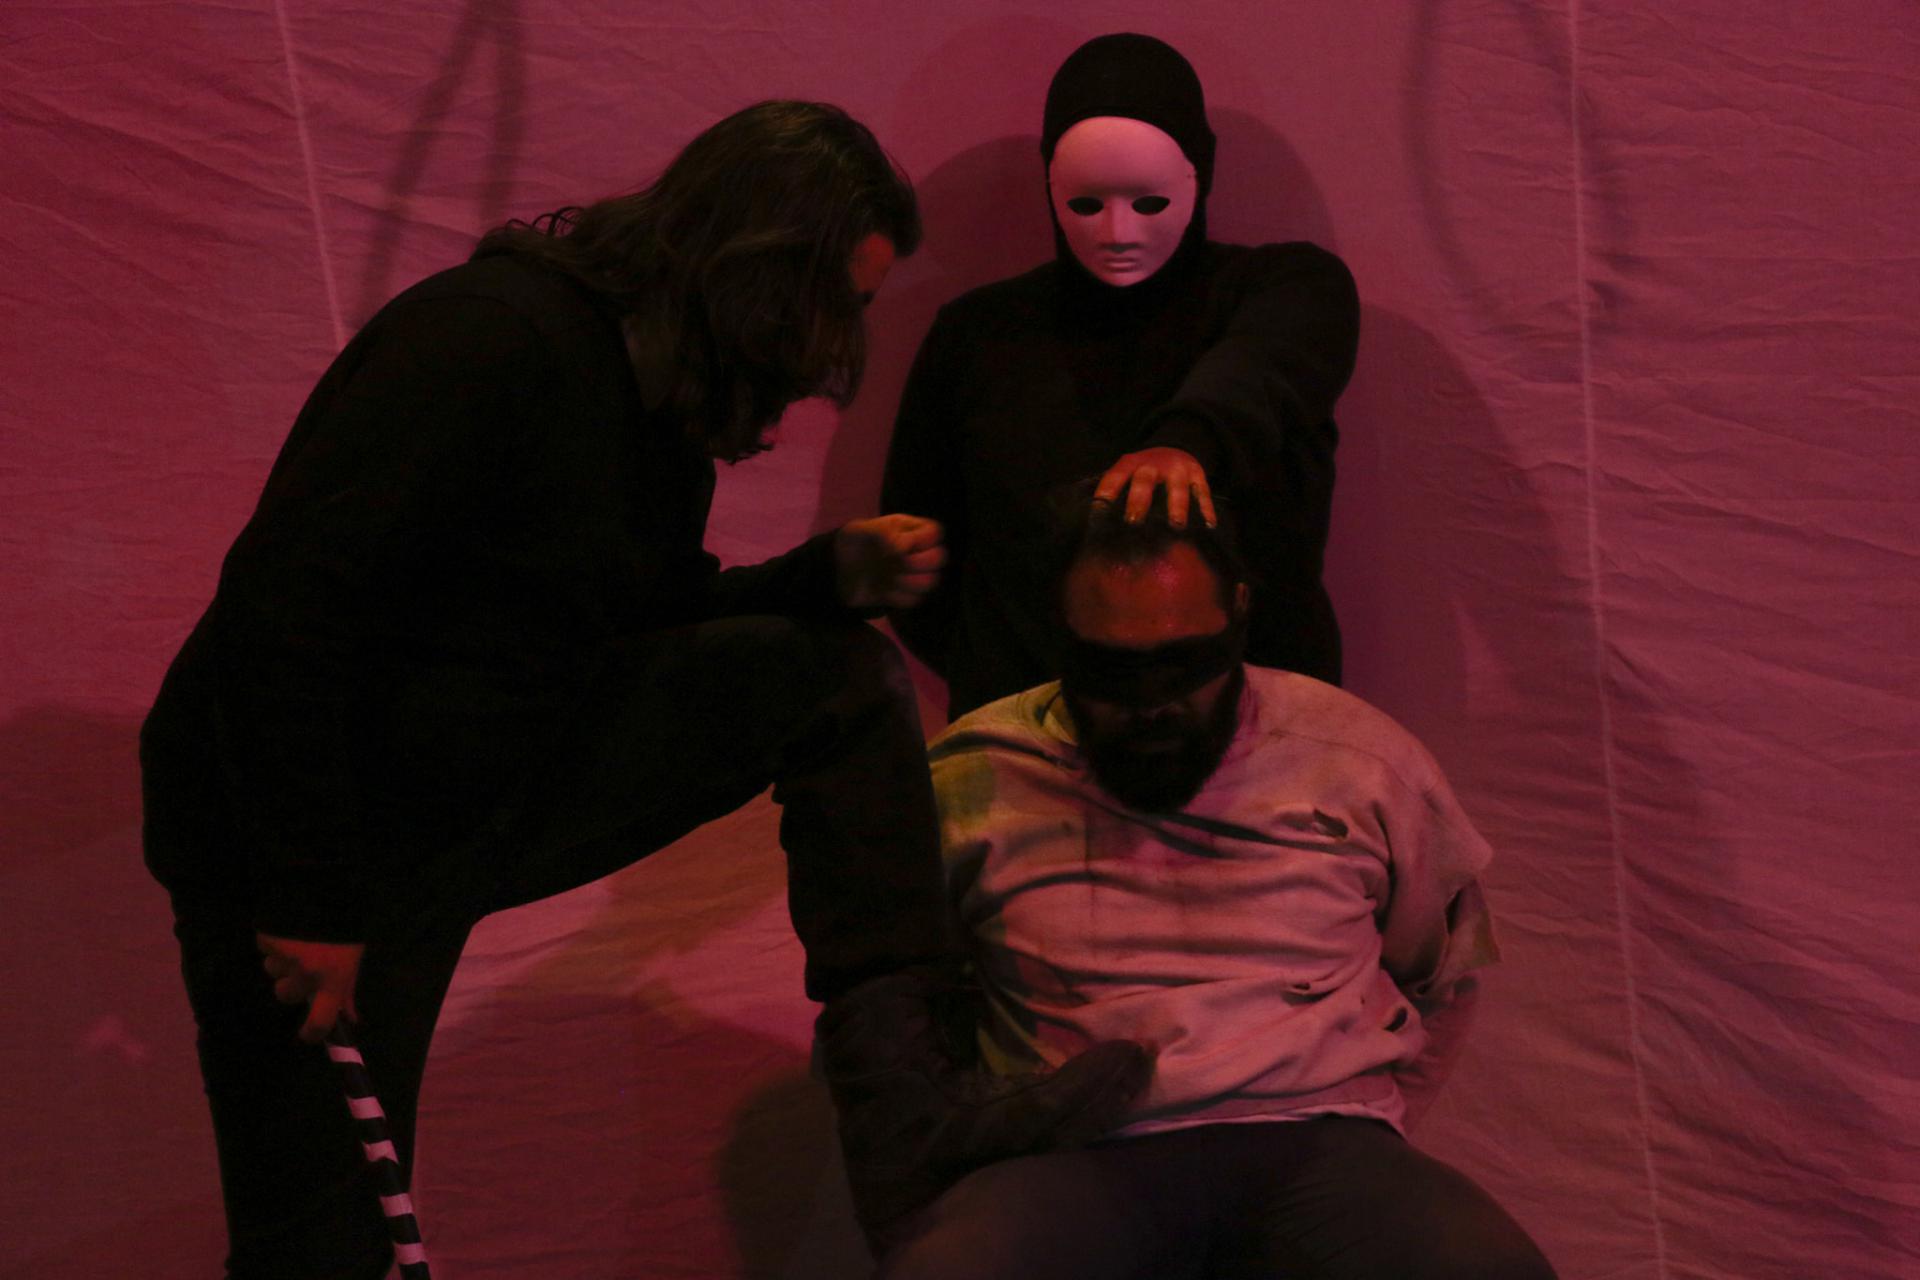 صورة من مسرحية 'سرداب الموت' من صفحة الممثل محمد الزير على فيسبوك 